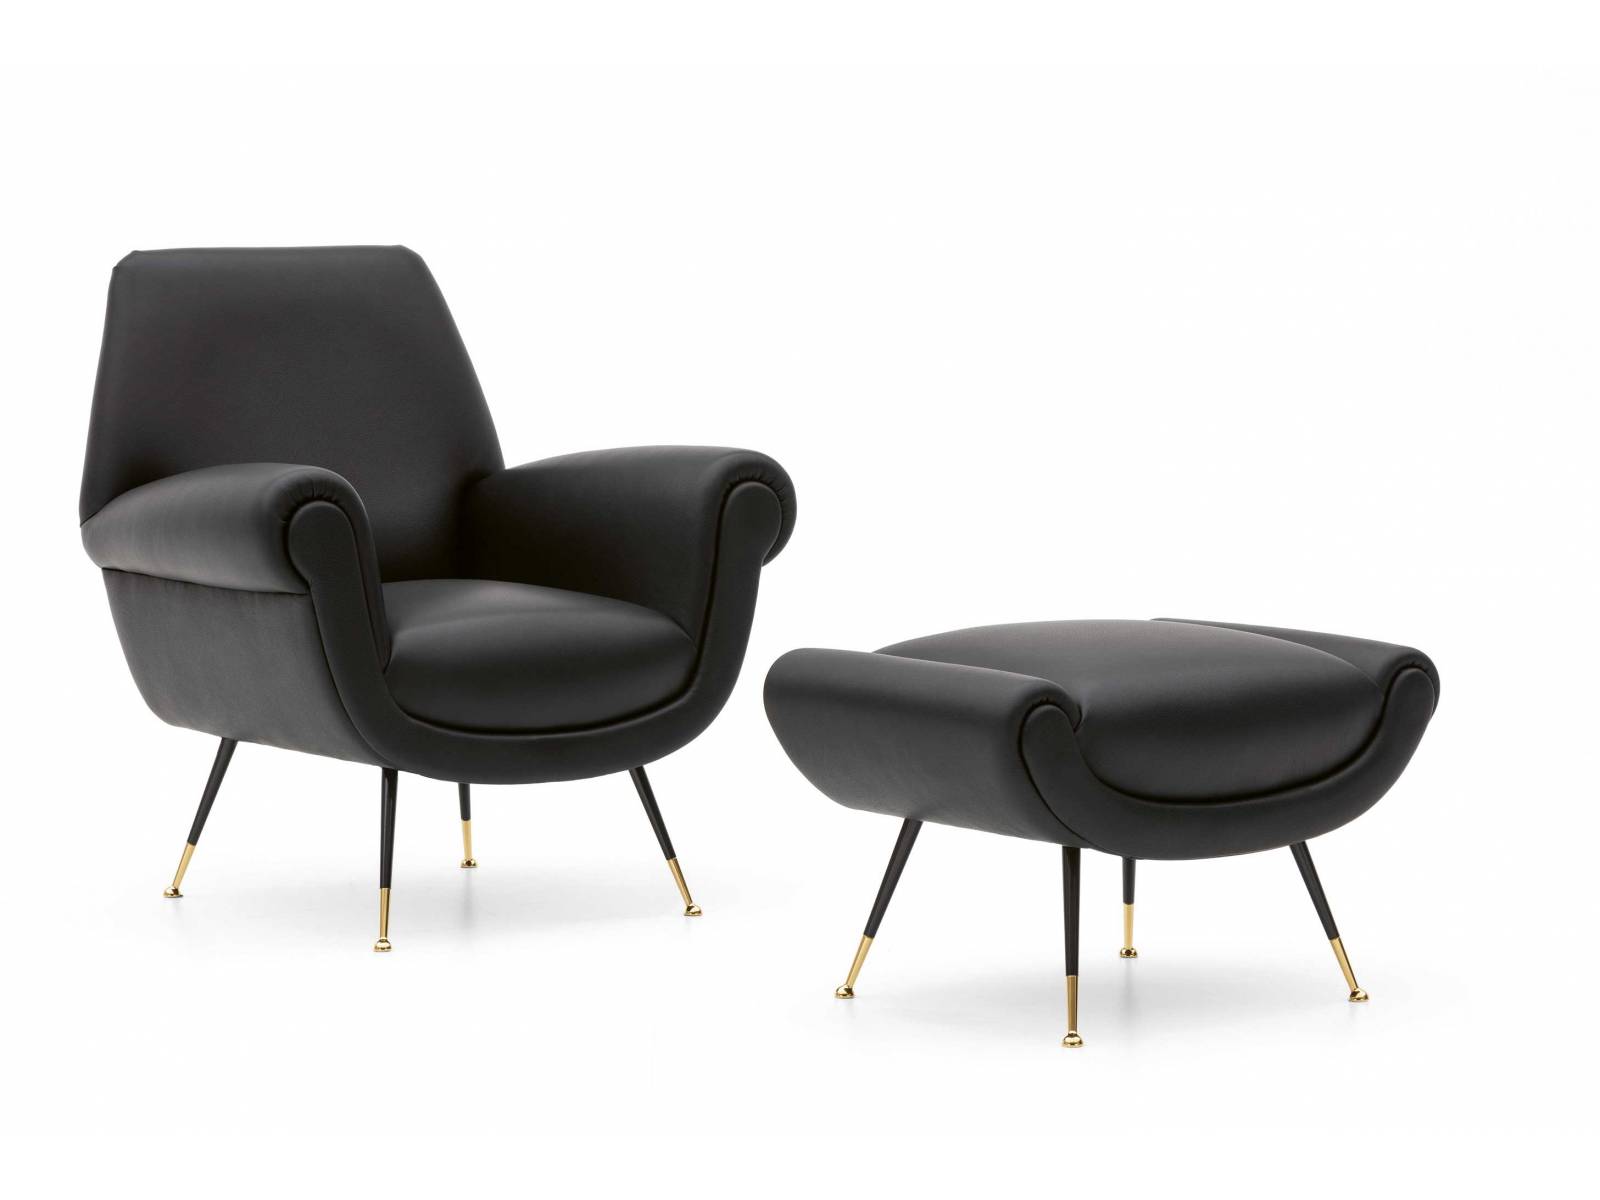 «Albert» ist ein Sitzmöbel, das sich an der Ästhetik der 1950er-Jahre orientiert. Ursprünglich von Architekt Gigi Radice für den Familiensitz der Minottis in Meda entworfen, wurde der Sessel zum 70-jährigen Firmenjubiläum 2018 neu aufgelegt. MINOTTI.